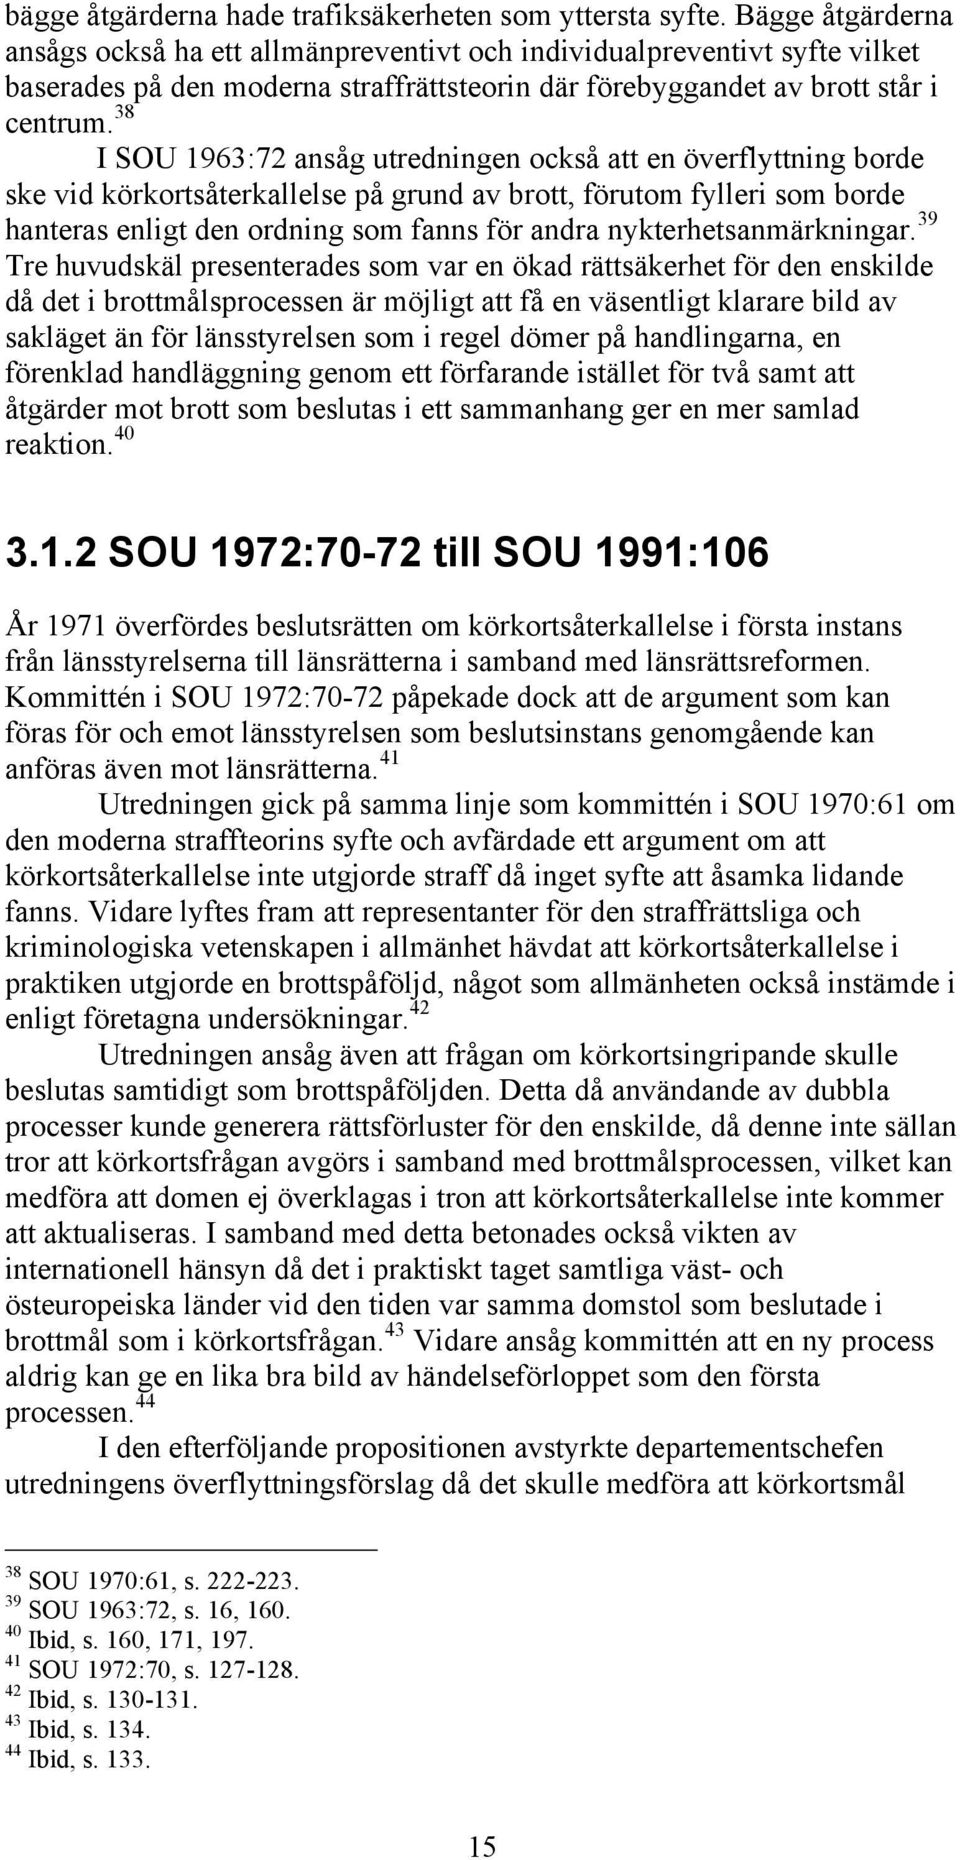 38 I SOU 1963:72 ansåg utredningen också att en överflyttning borde ske vid körkortsåterkallelse på grund av brott, förutom fylleri som borde hanteras enligt den ordning som fanns för andra